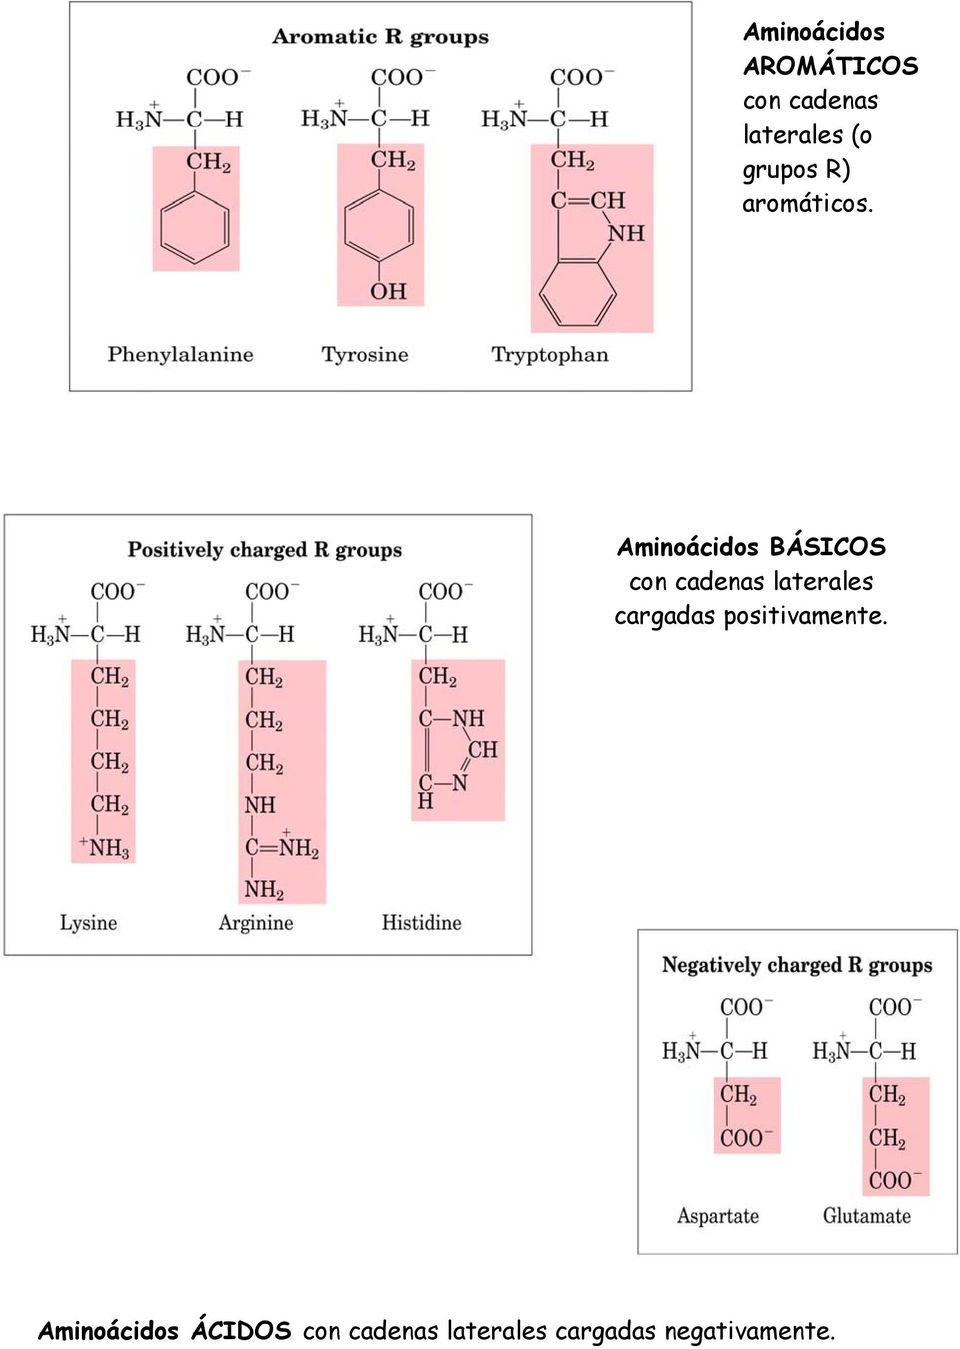 Aminoácidos BÁSICOS con cadenas laterales